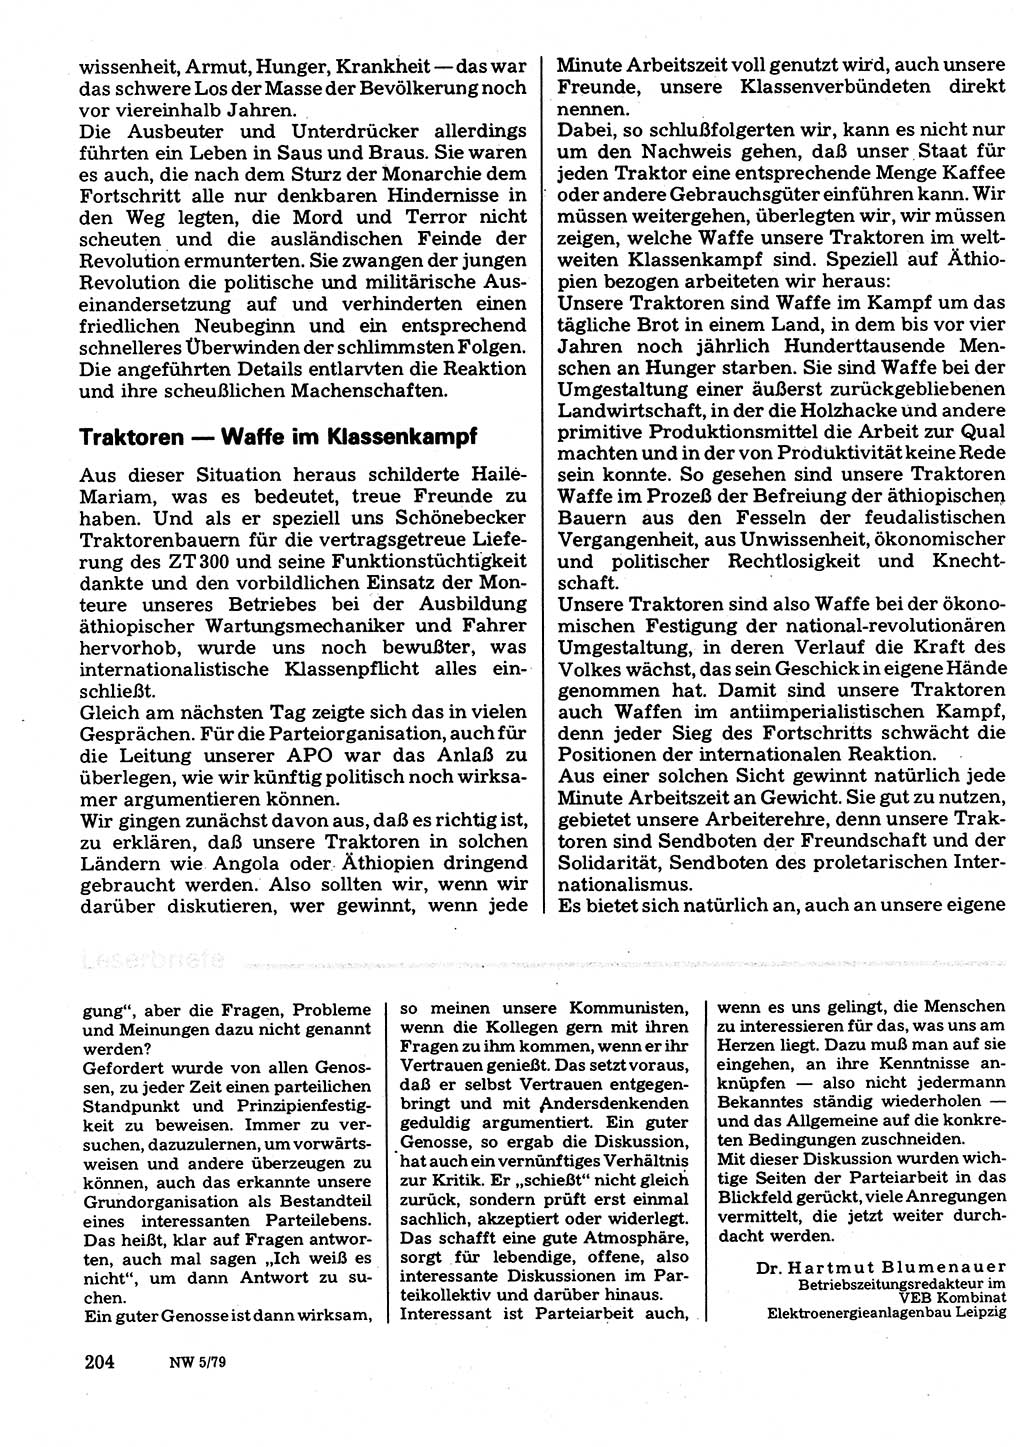 Neuer Weg (NW), Organ des Zentralkomitees (ZK) der SED (Sozialistische Einheitspartei Deutschlands) für Fragen des Parteilebens, 34. Jahrgang [Deutsche Demokratische Republik (DDR)] 1979, Seite 204 (NW ZK SED DDR 1979, S. 204)